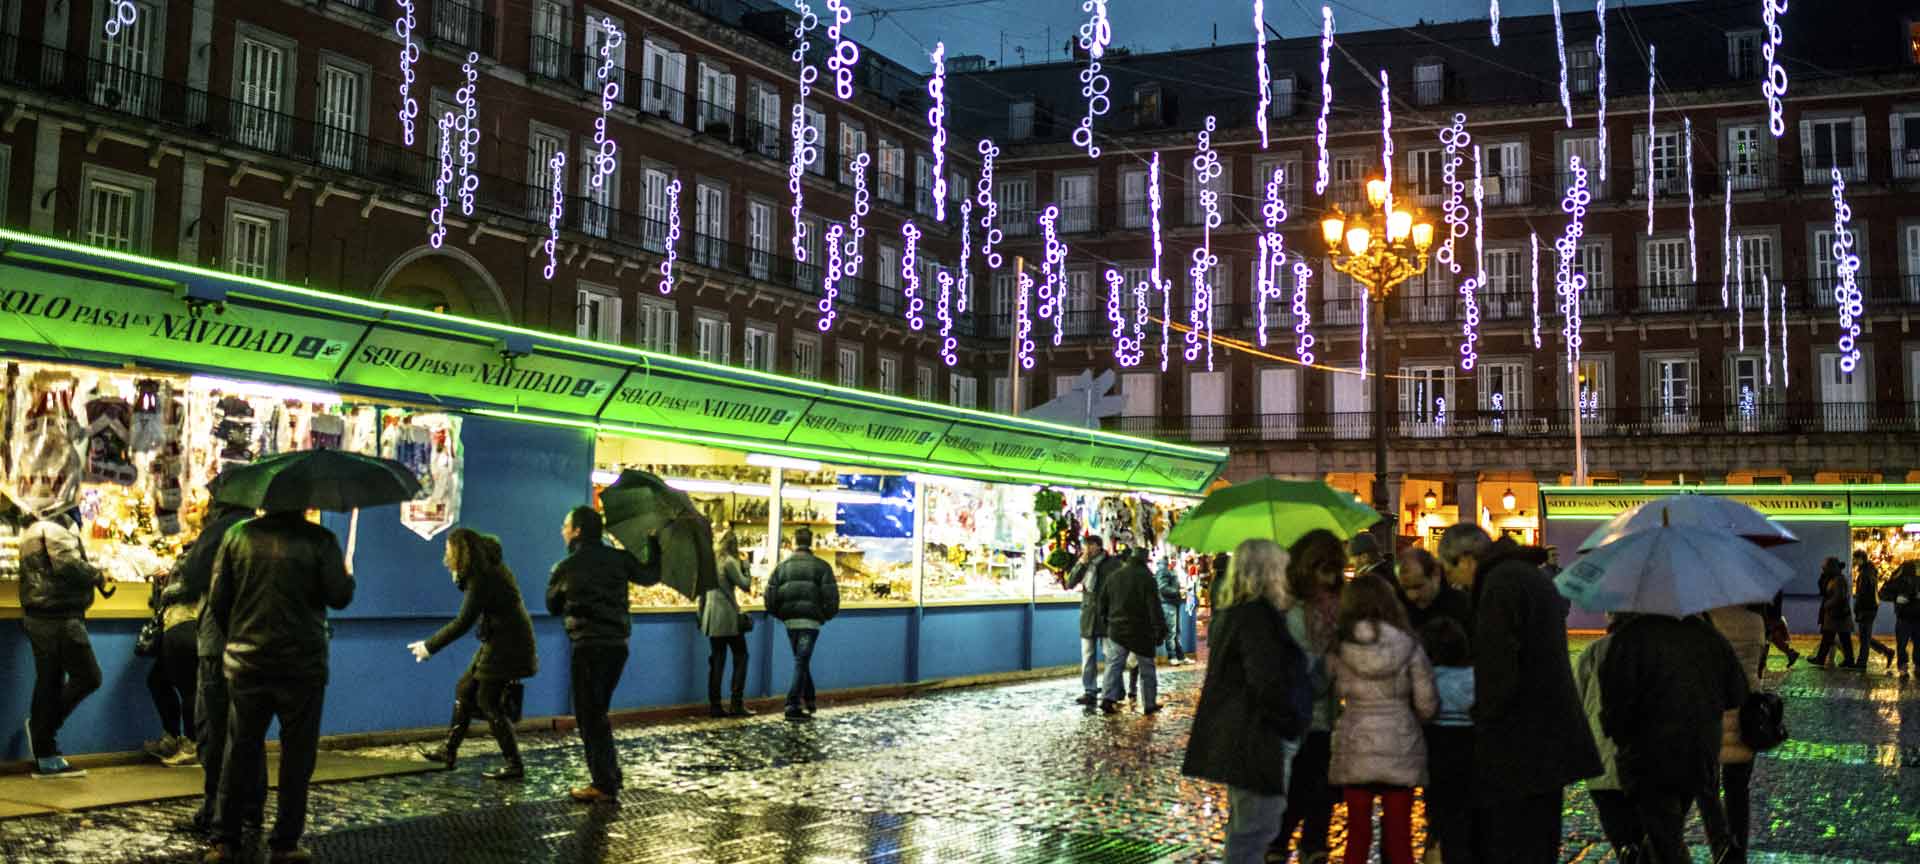 Kerstmarkt 's nachts met regen en feestverlichting.